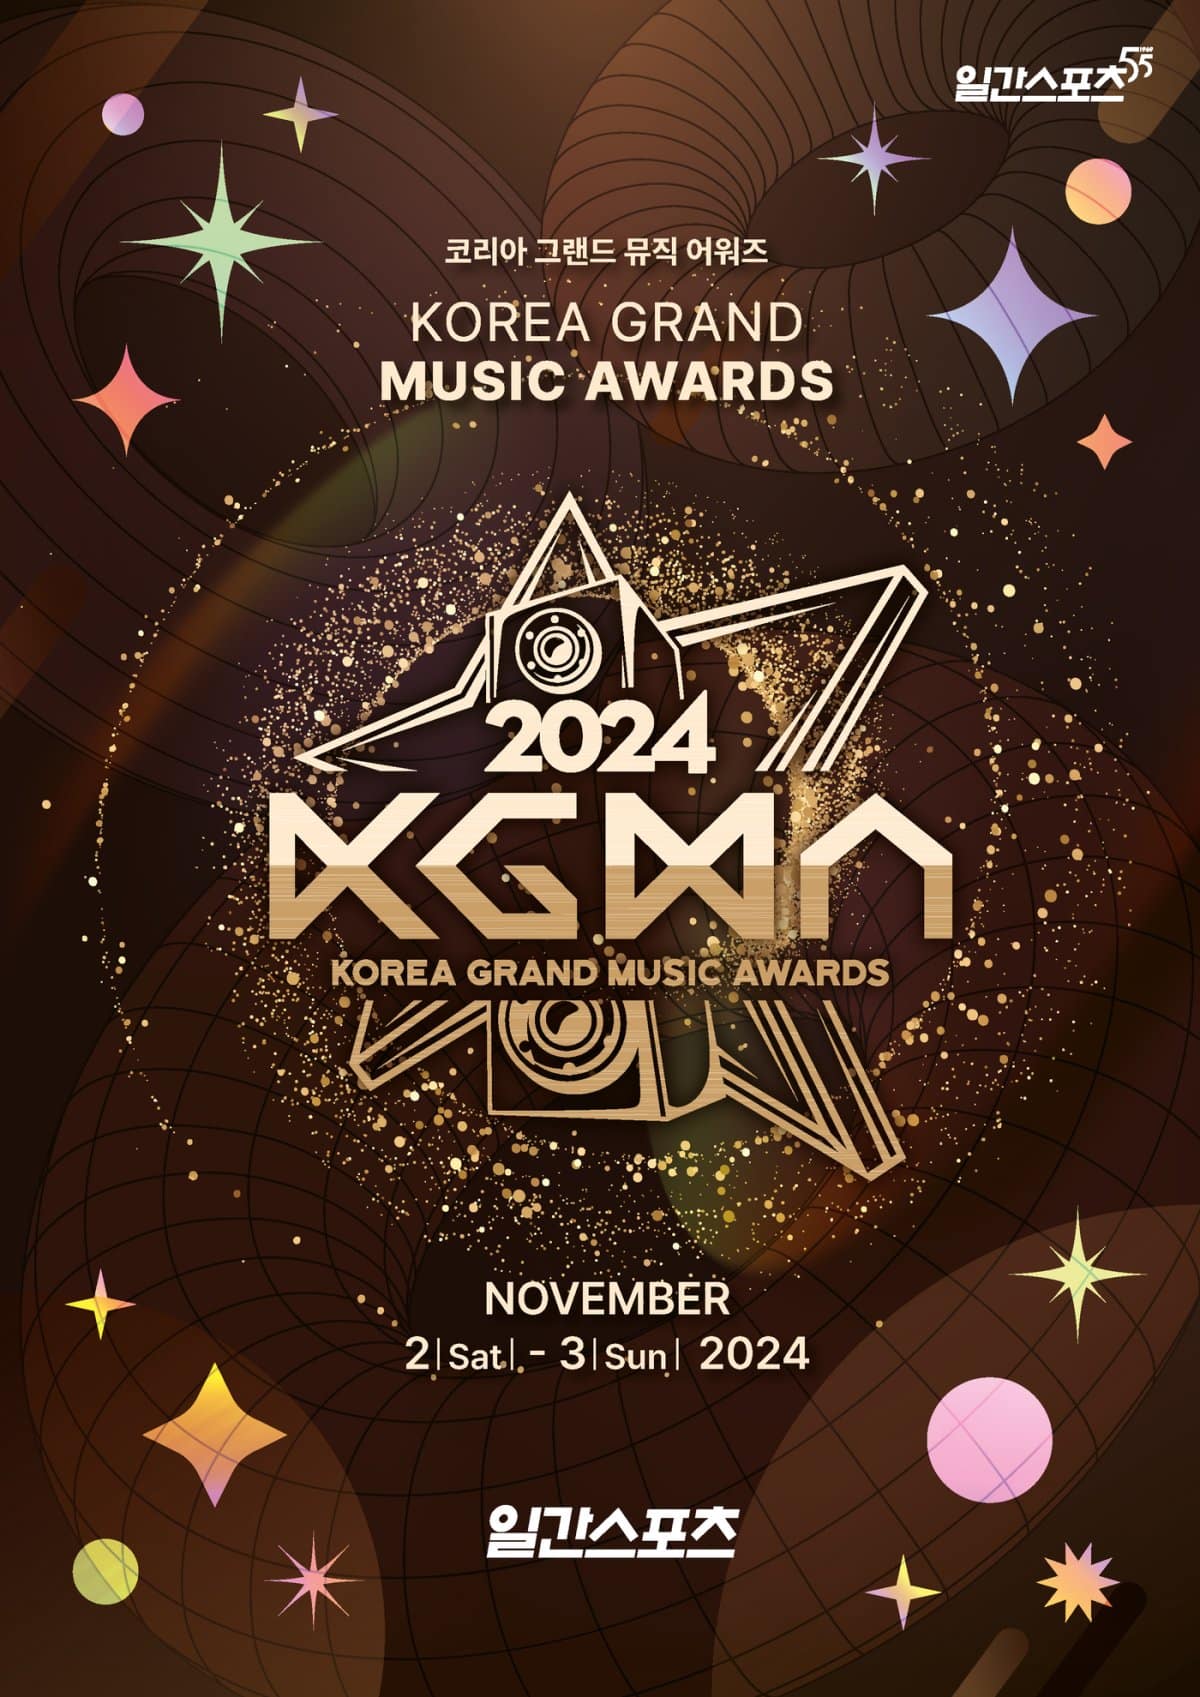 1-я церемония награждения «Korea Grand Music Awards» от бывших организаторов «Golden Disc Awards» пройдет в этом году